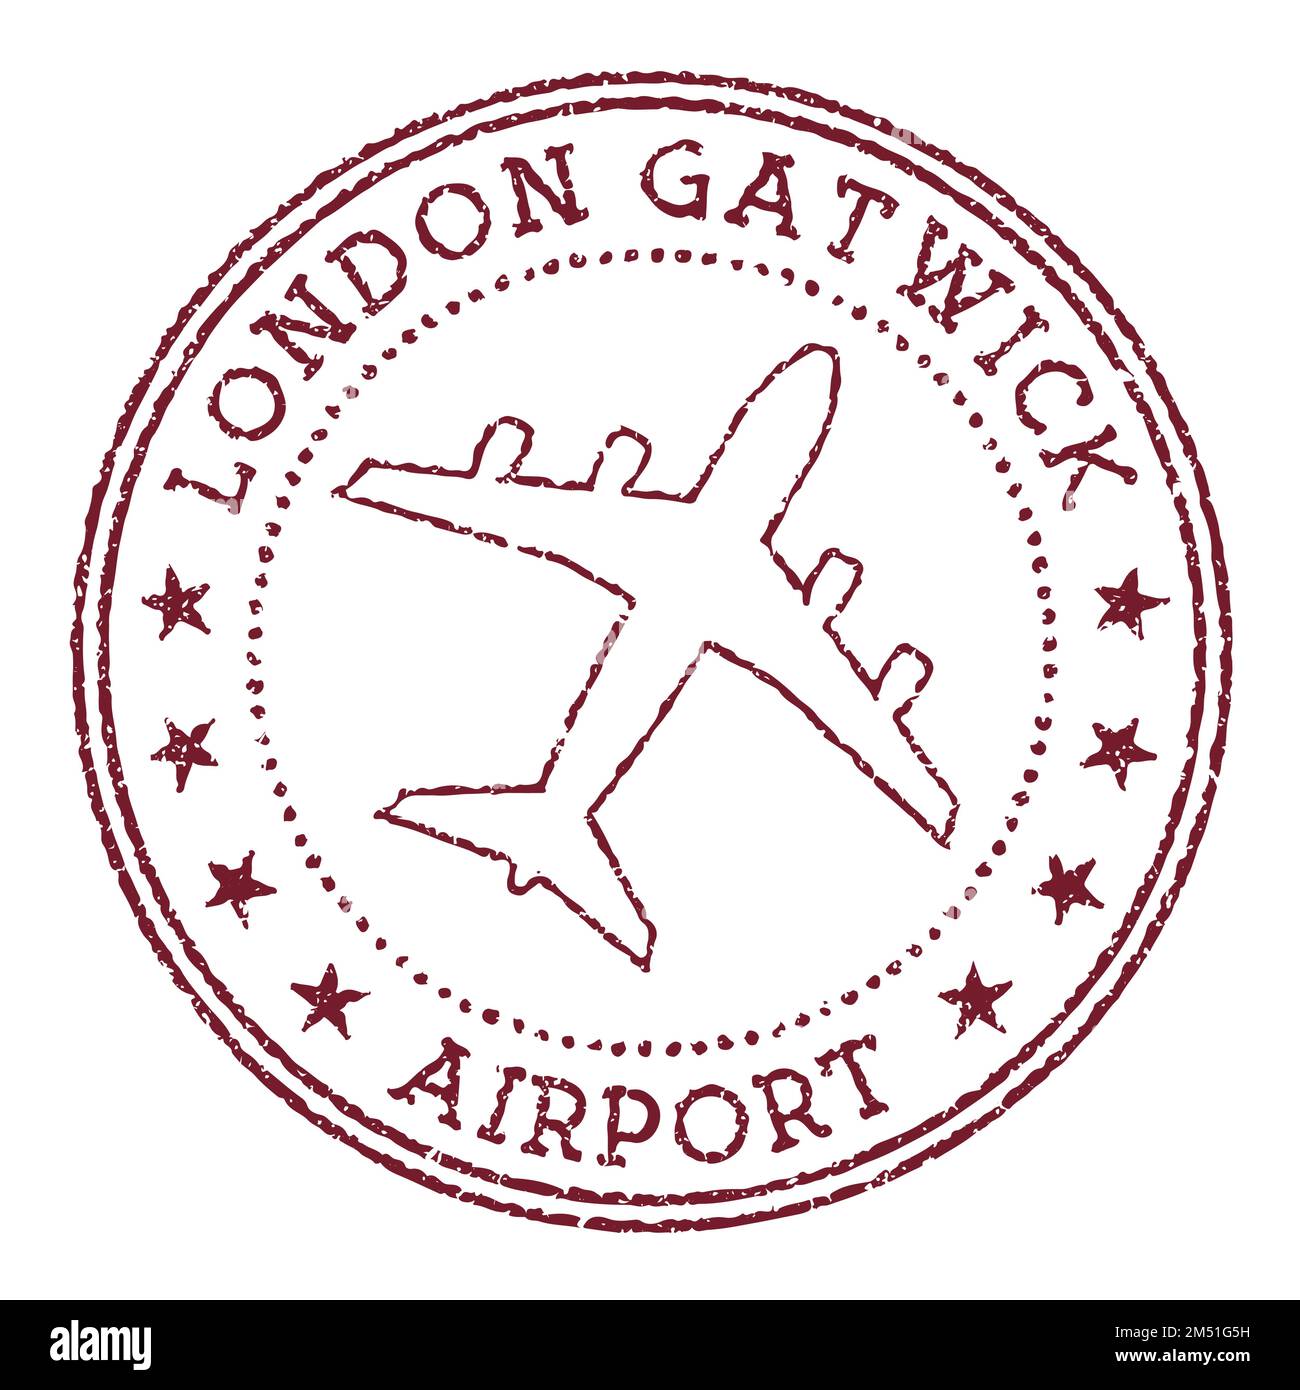 Timbre de l'aéroport de Londres Gatwick. Logo rond de l'aéroport de Londres. Illustration vectorielle. Illustration de Vecteur